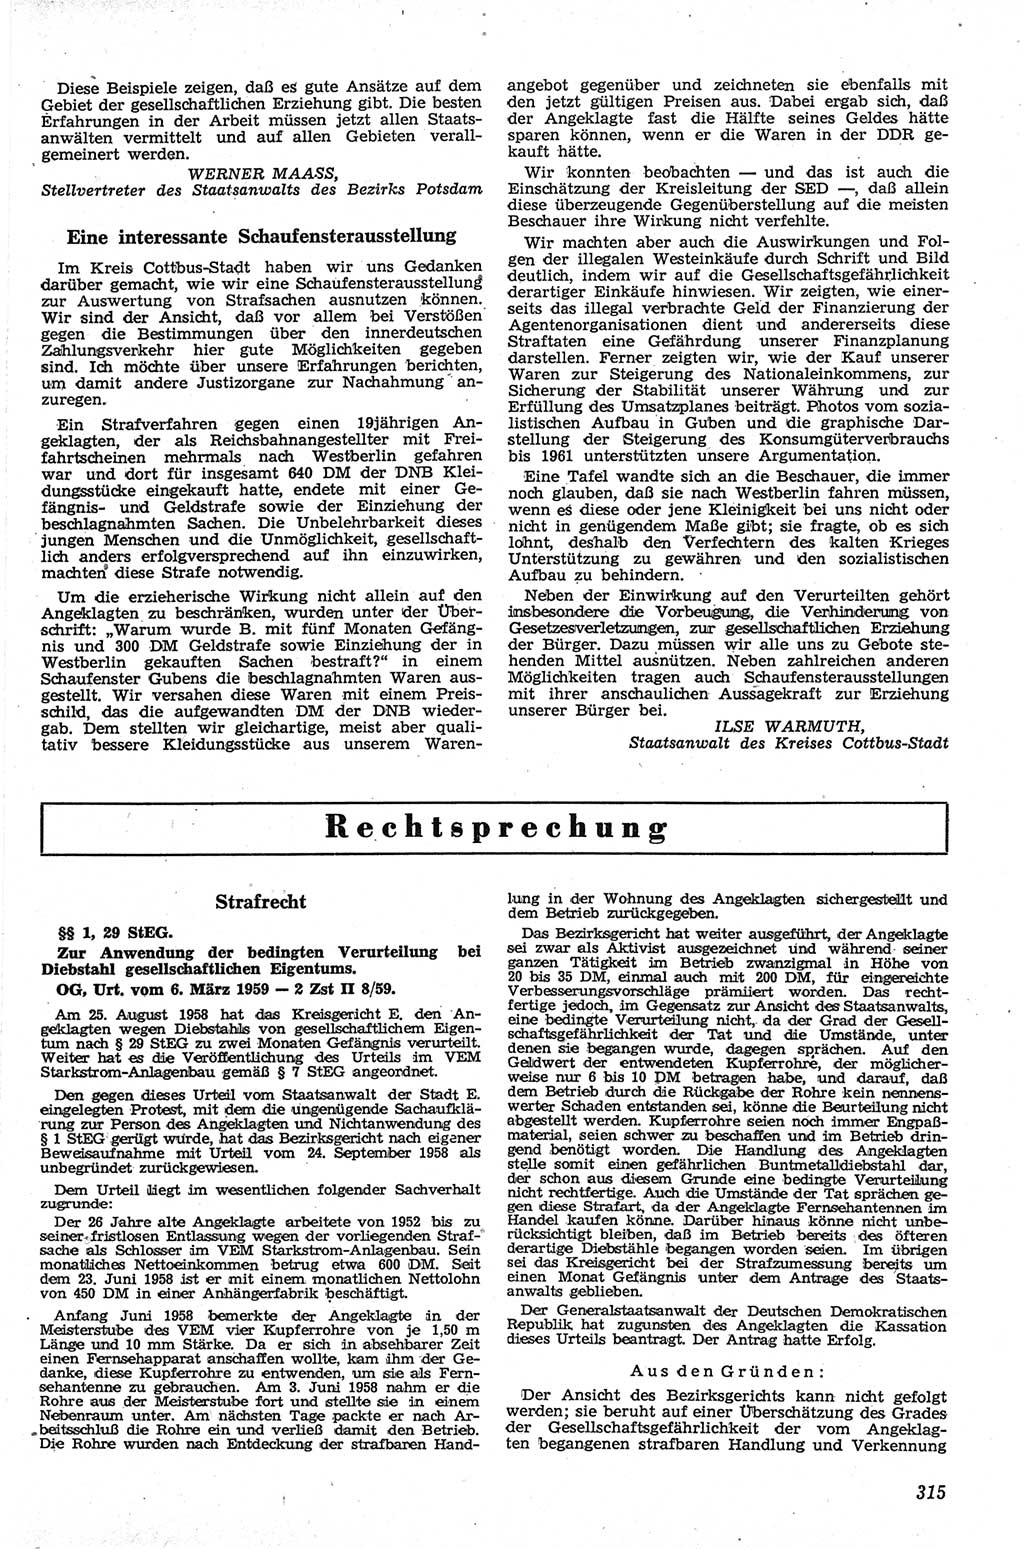 Neue Justiz (NJ), Zeitschrift für Recht und Rechtswissenschaft [Deutsche Demokratische Republik (DDR)], 13. Jahrgang 1959, Seite 315 (NJ DDR 1959, S. 315)